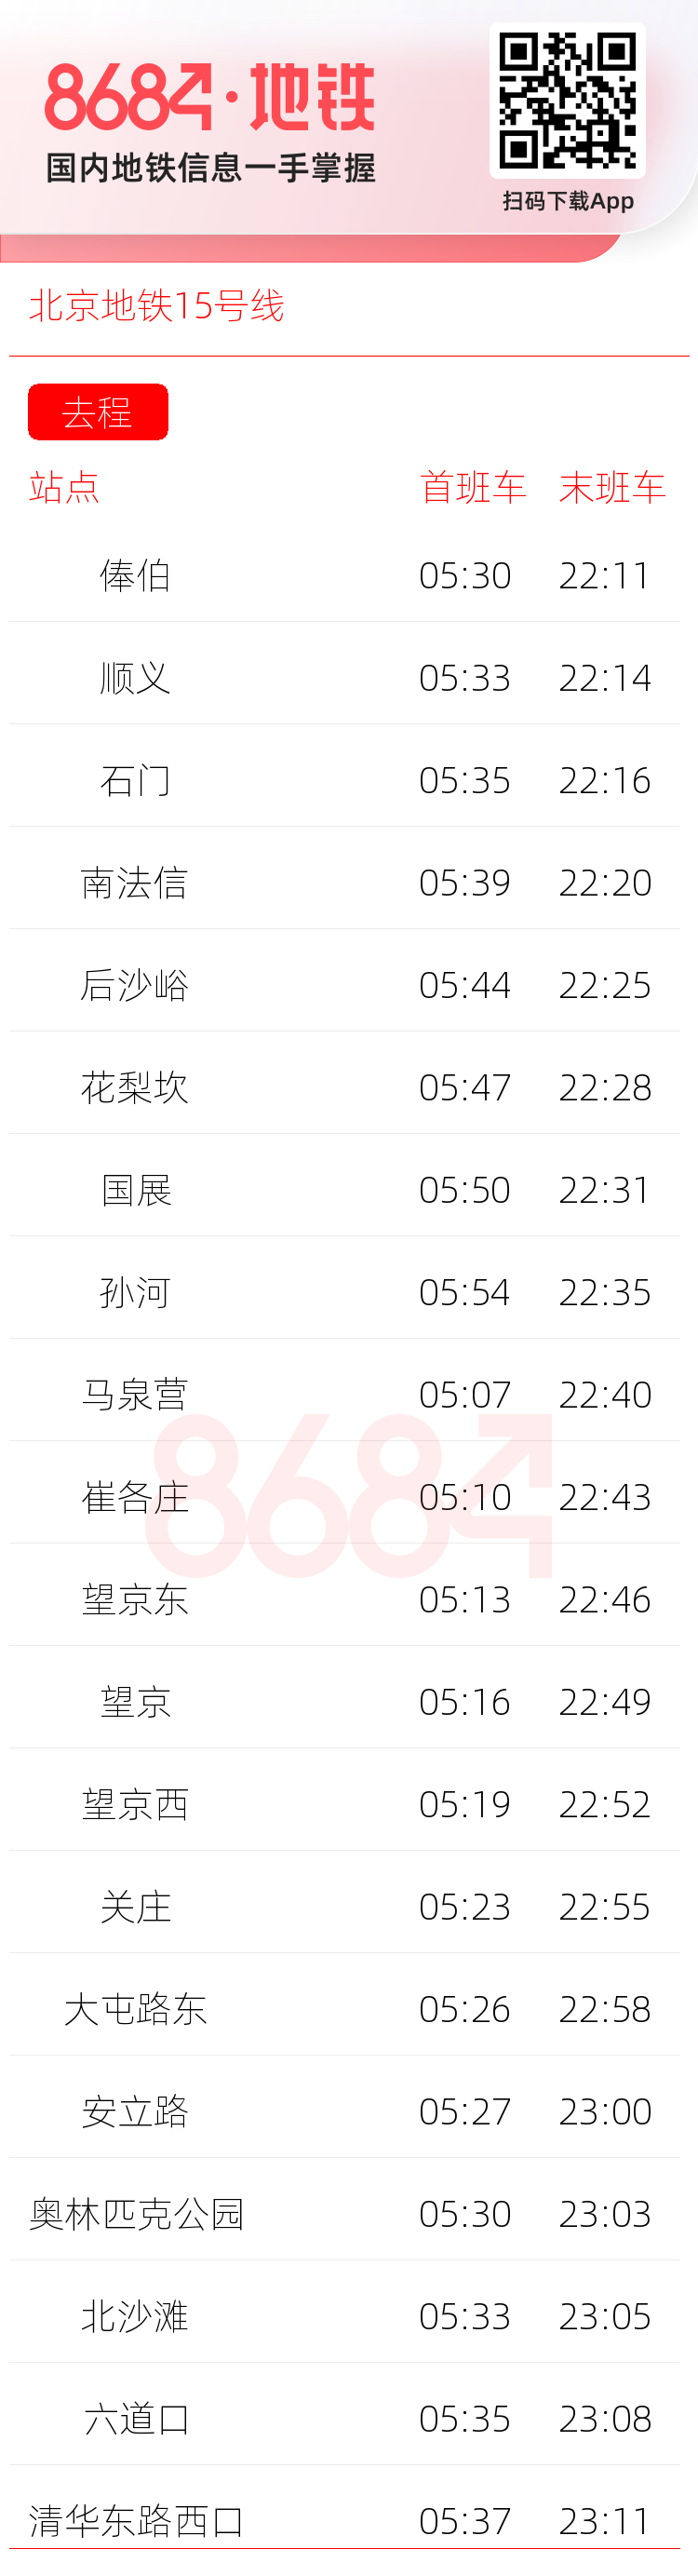 北京地铁15号线运营时间表